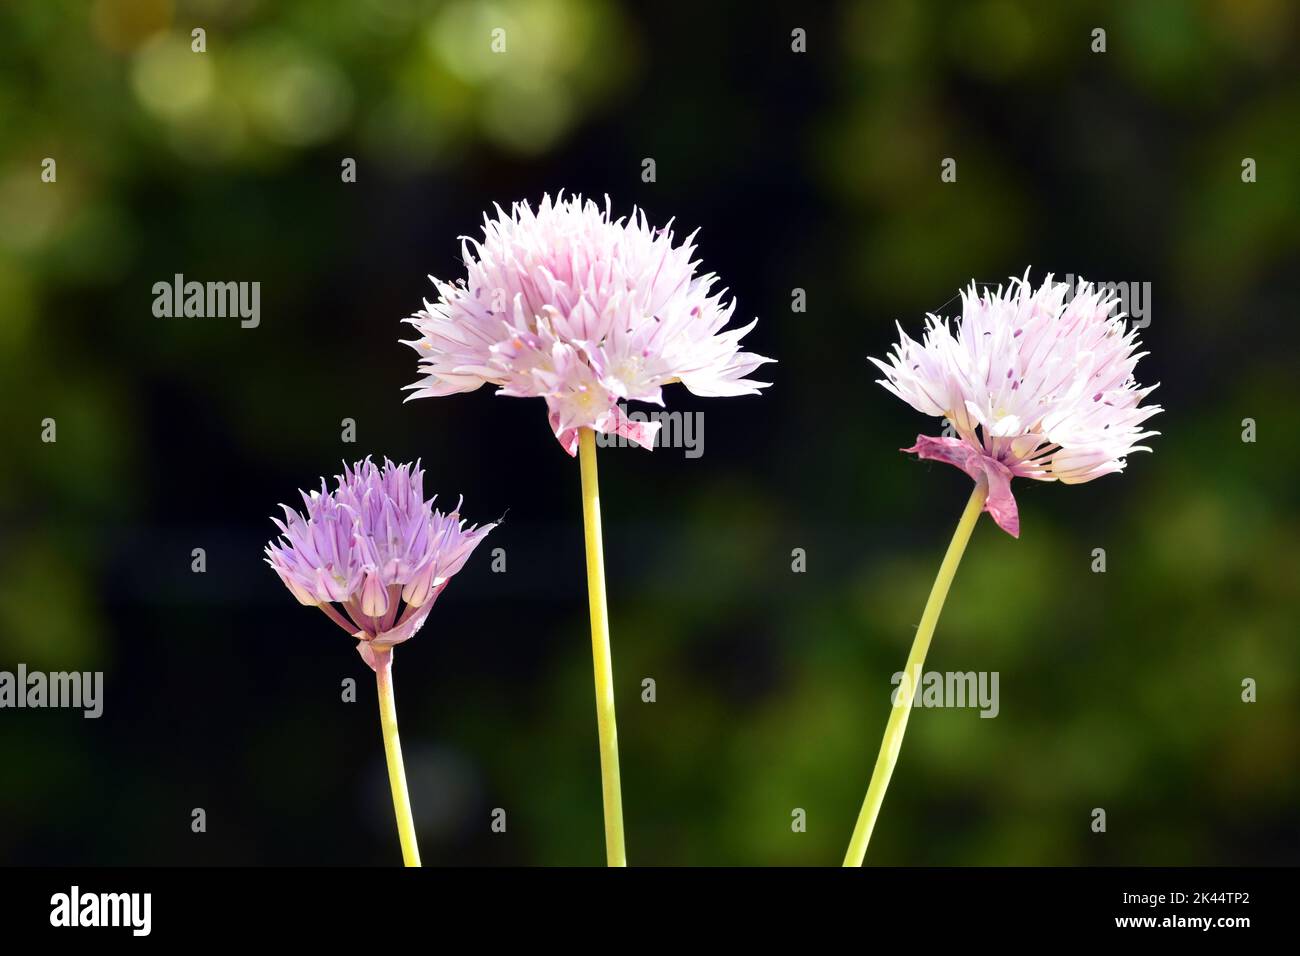 Allium roseum or rosy garlic flowers Stock Photo